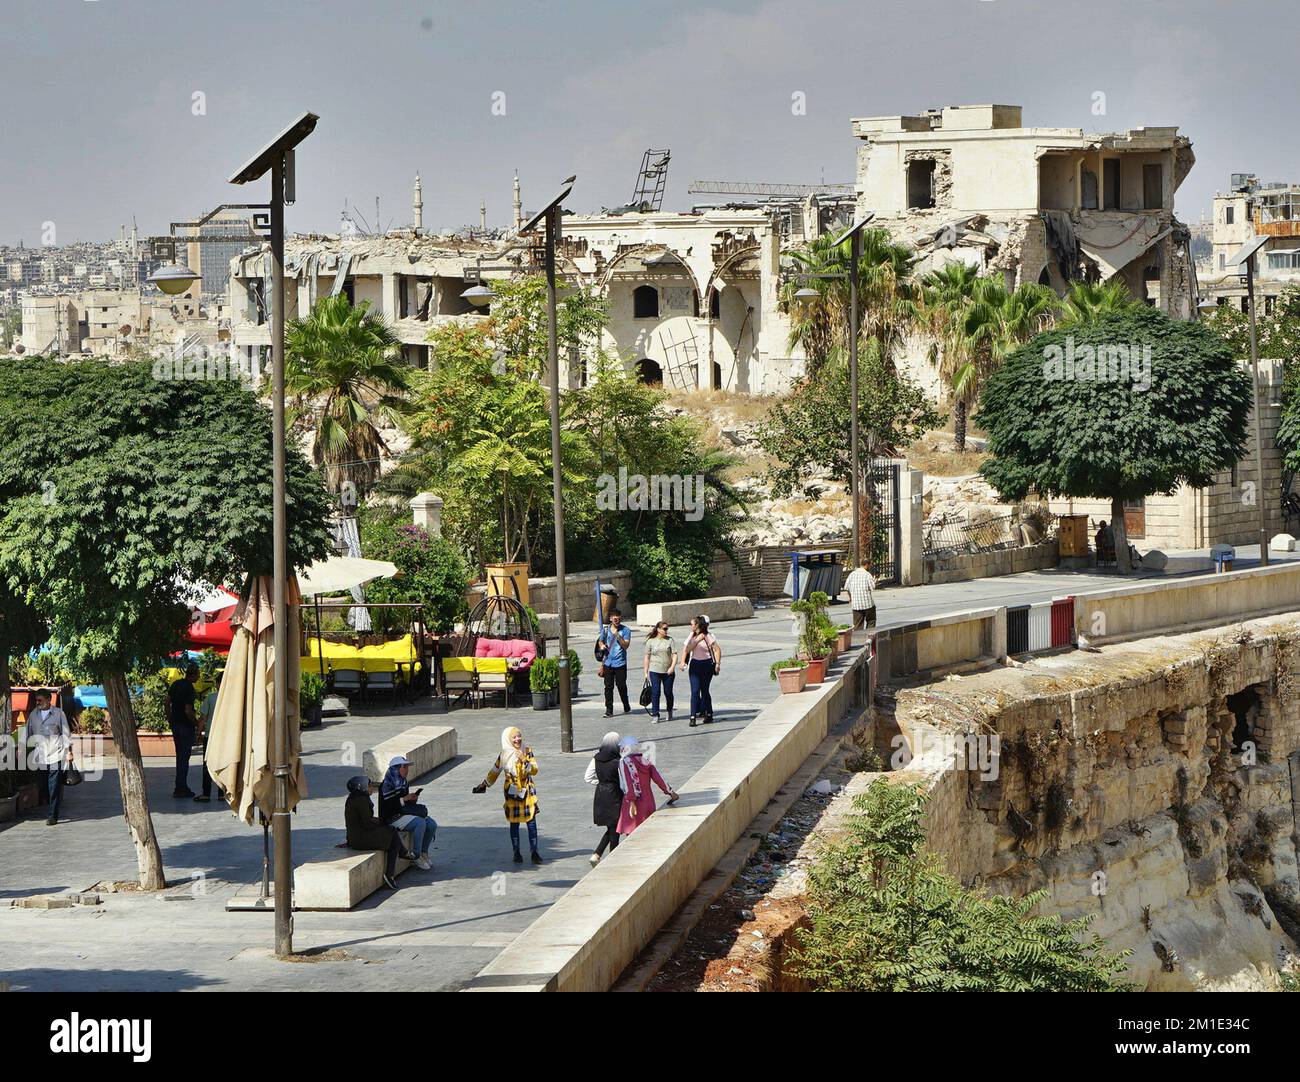 La place devant la citadelle d'Alep, en Syrie Banque D'Images